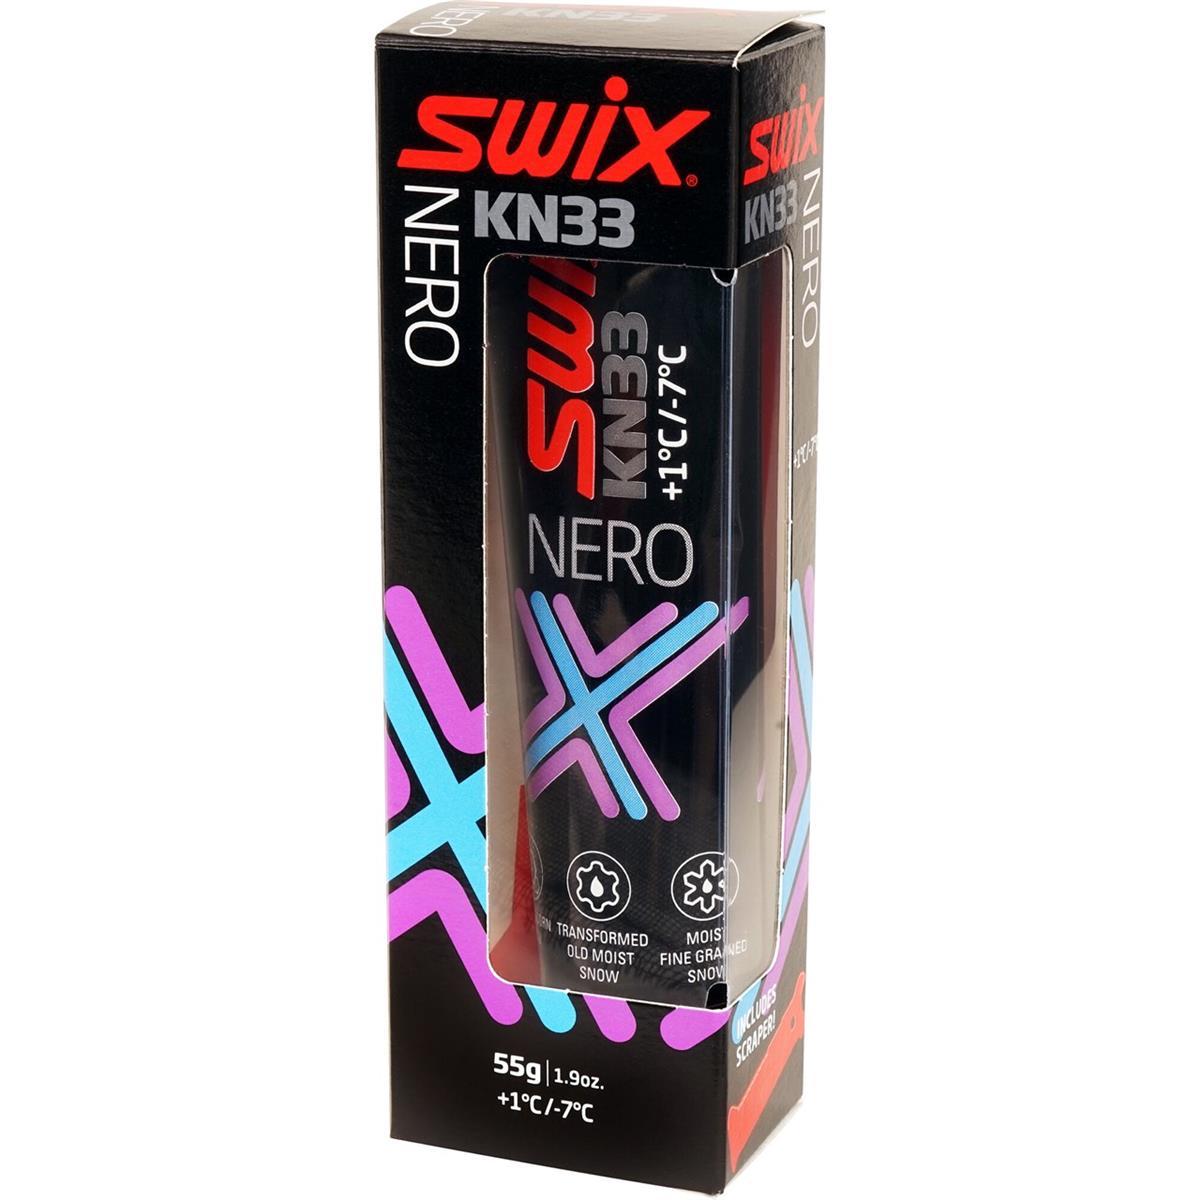 Swix KN33 Nero 55g +1/-7°